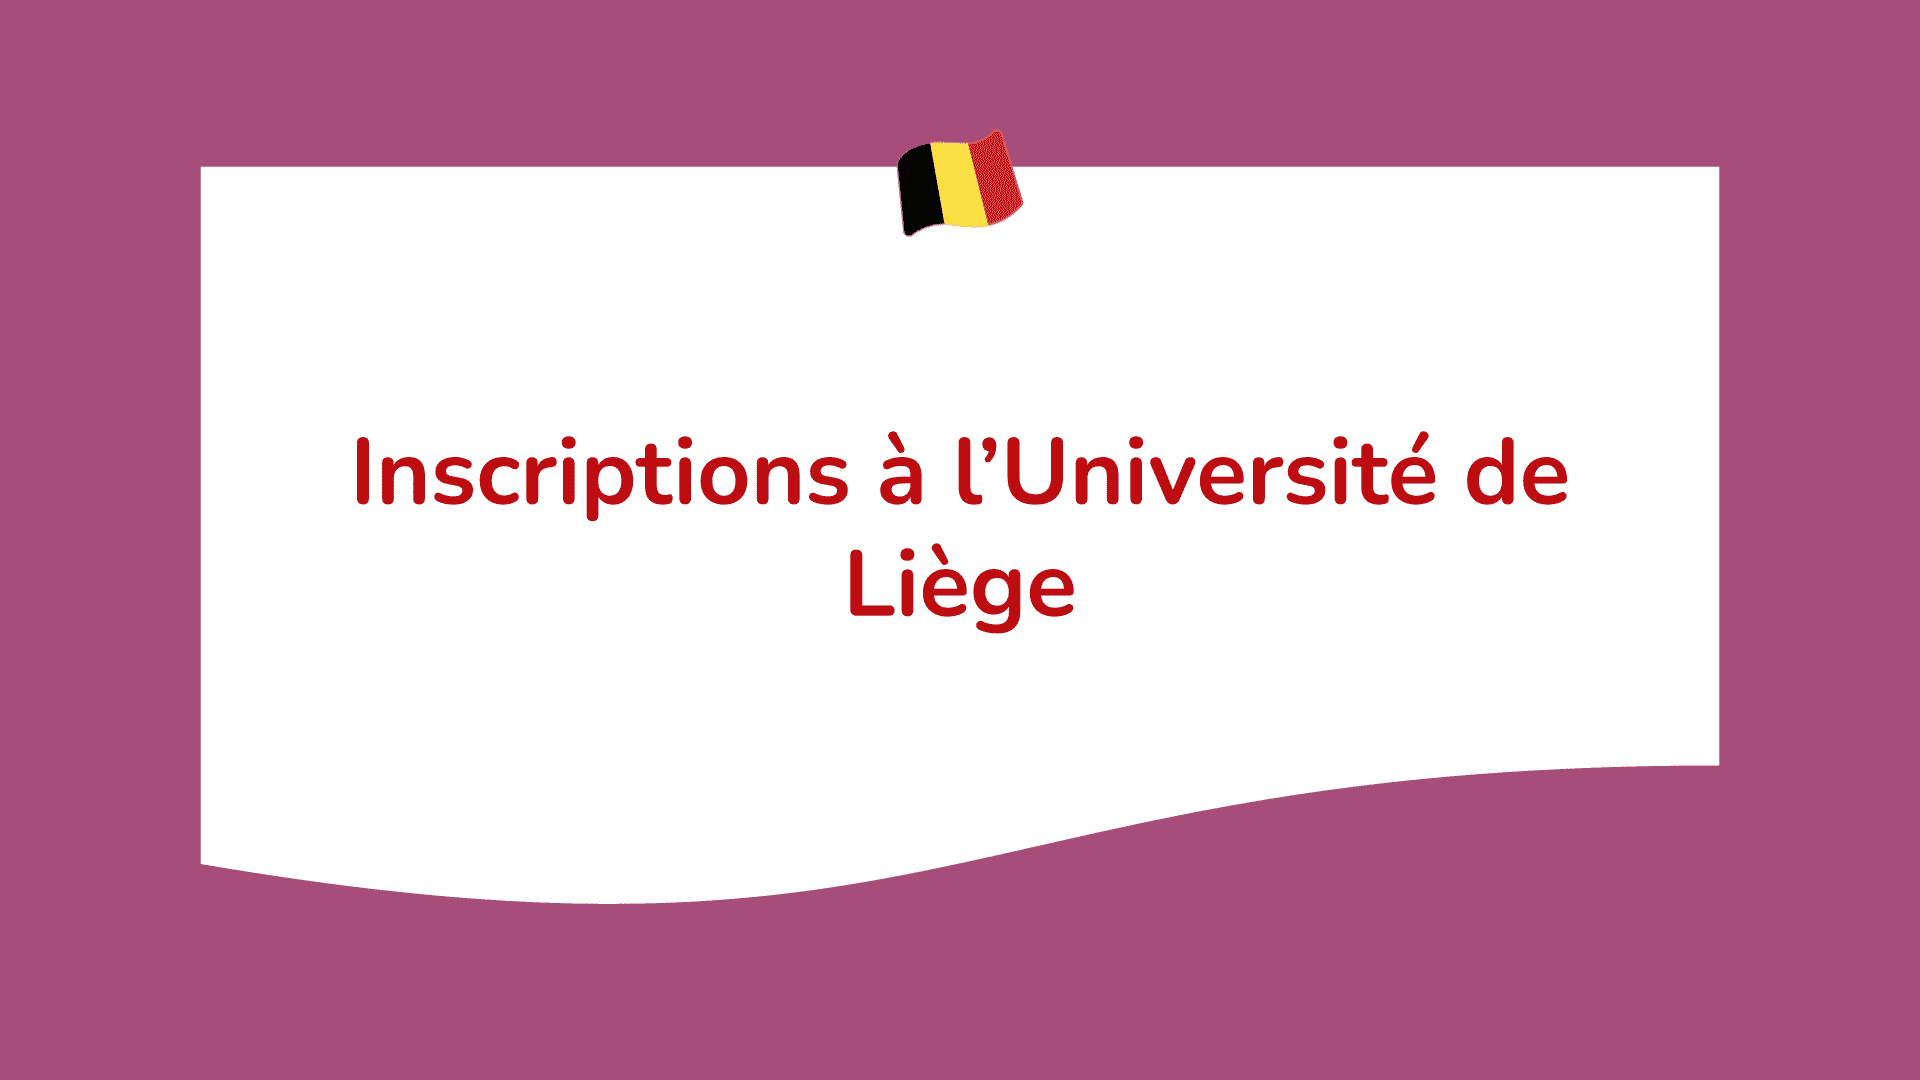 Inscriptions à l’Université de Liège